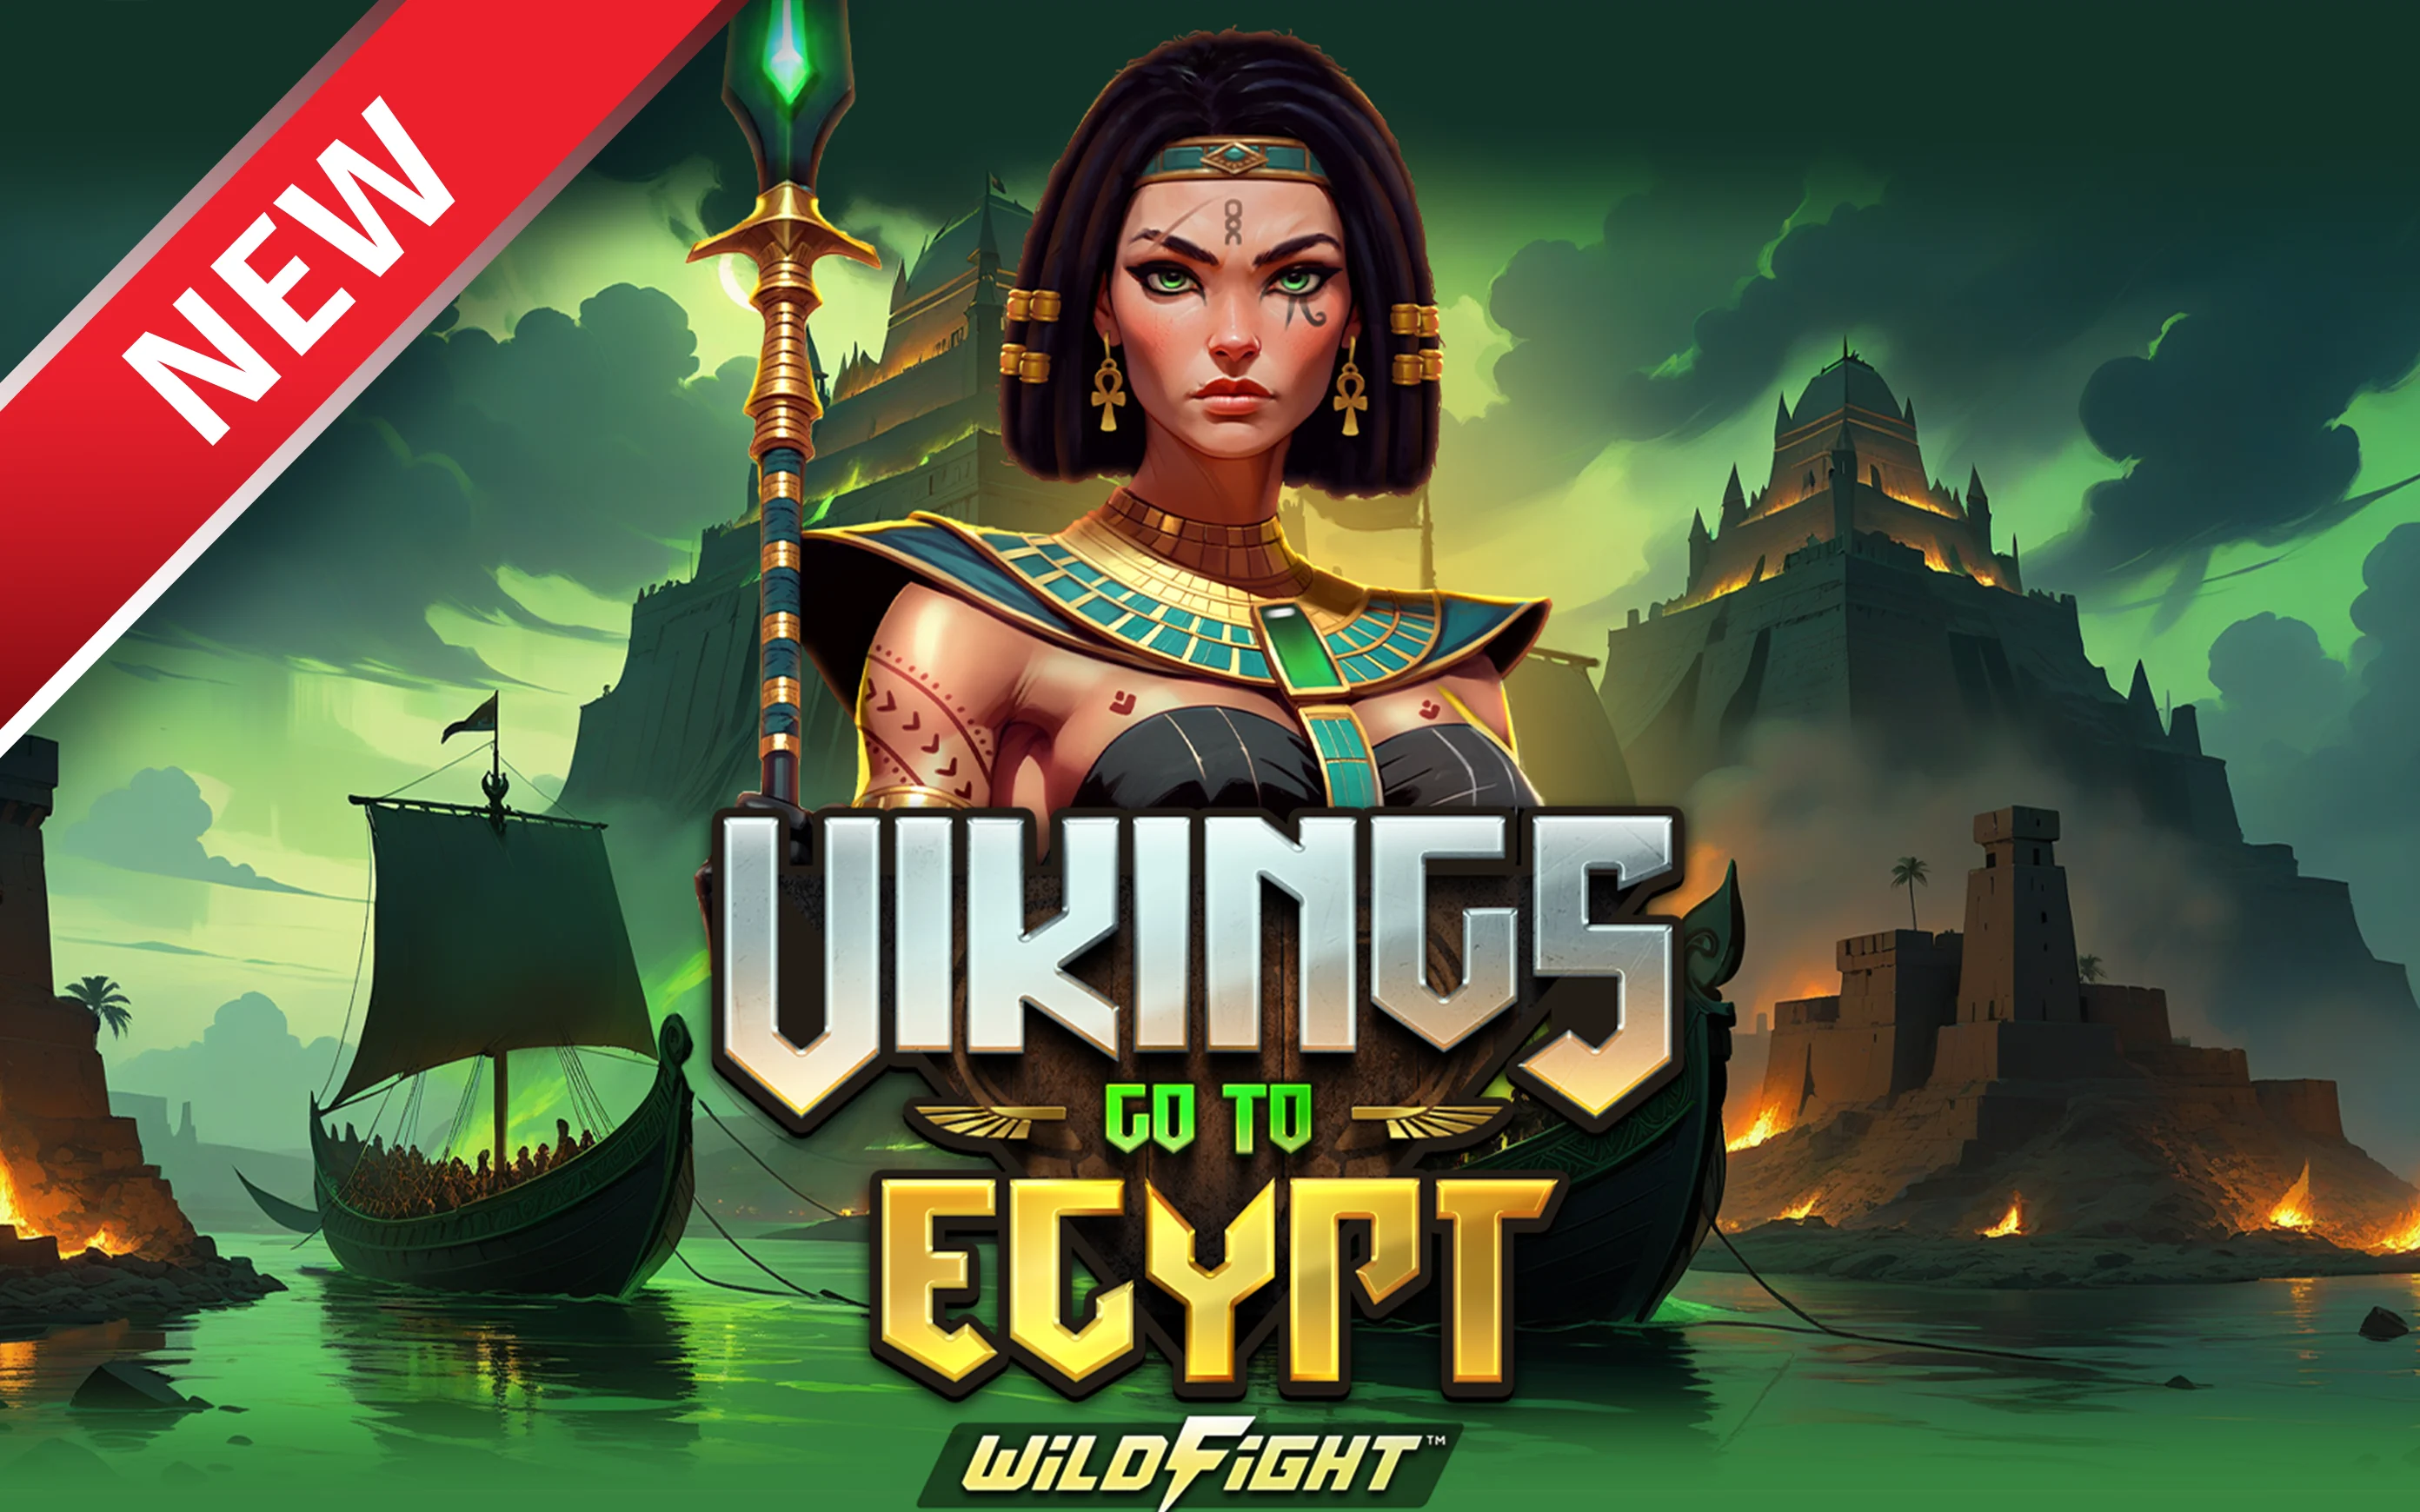 เล่น Vikings Go To Egypt Wild Fight!™ บนคาสิโนออนไลน์ Starcasino.be